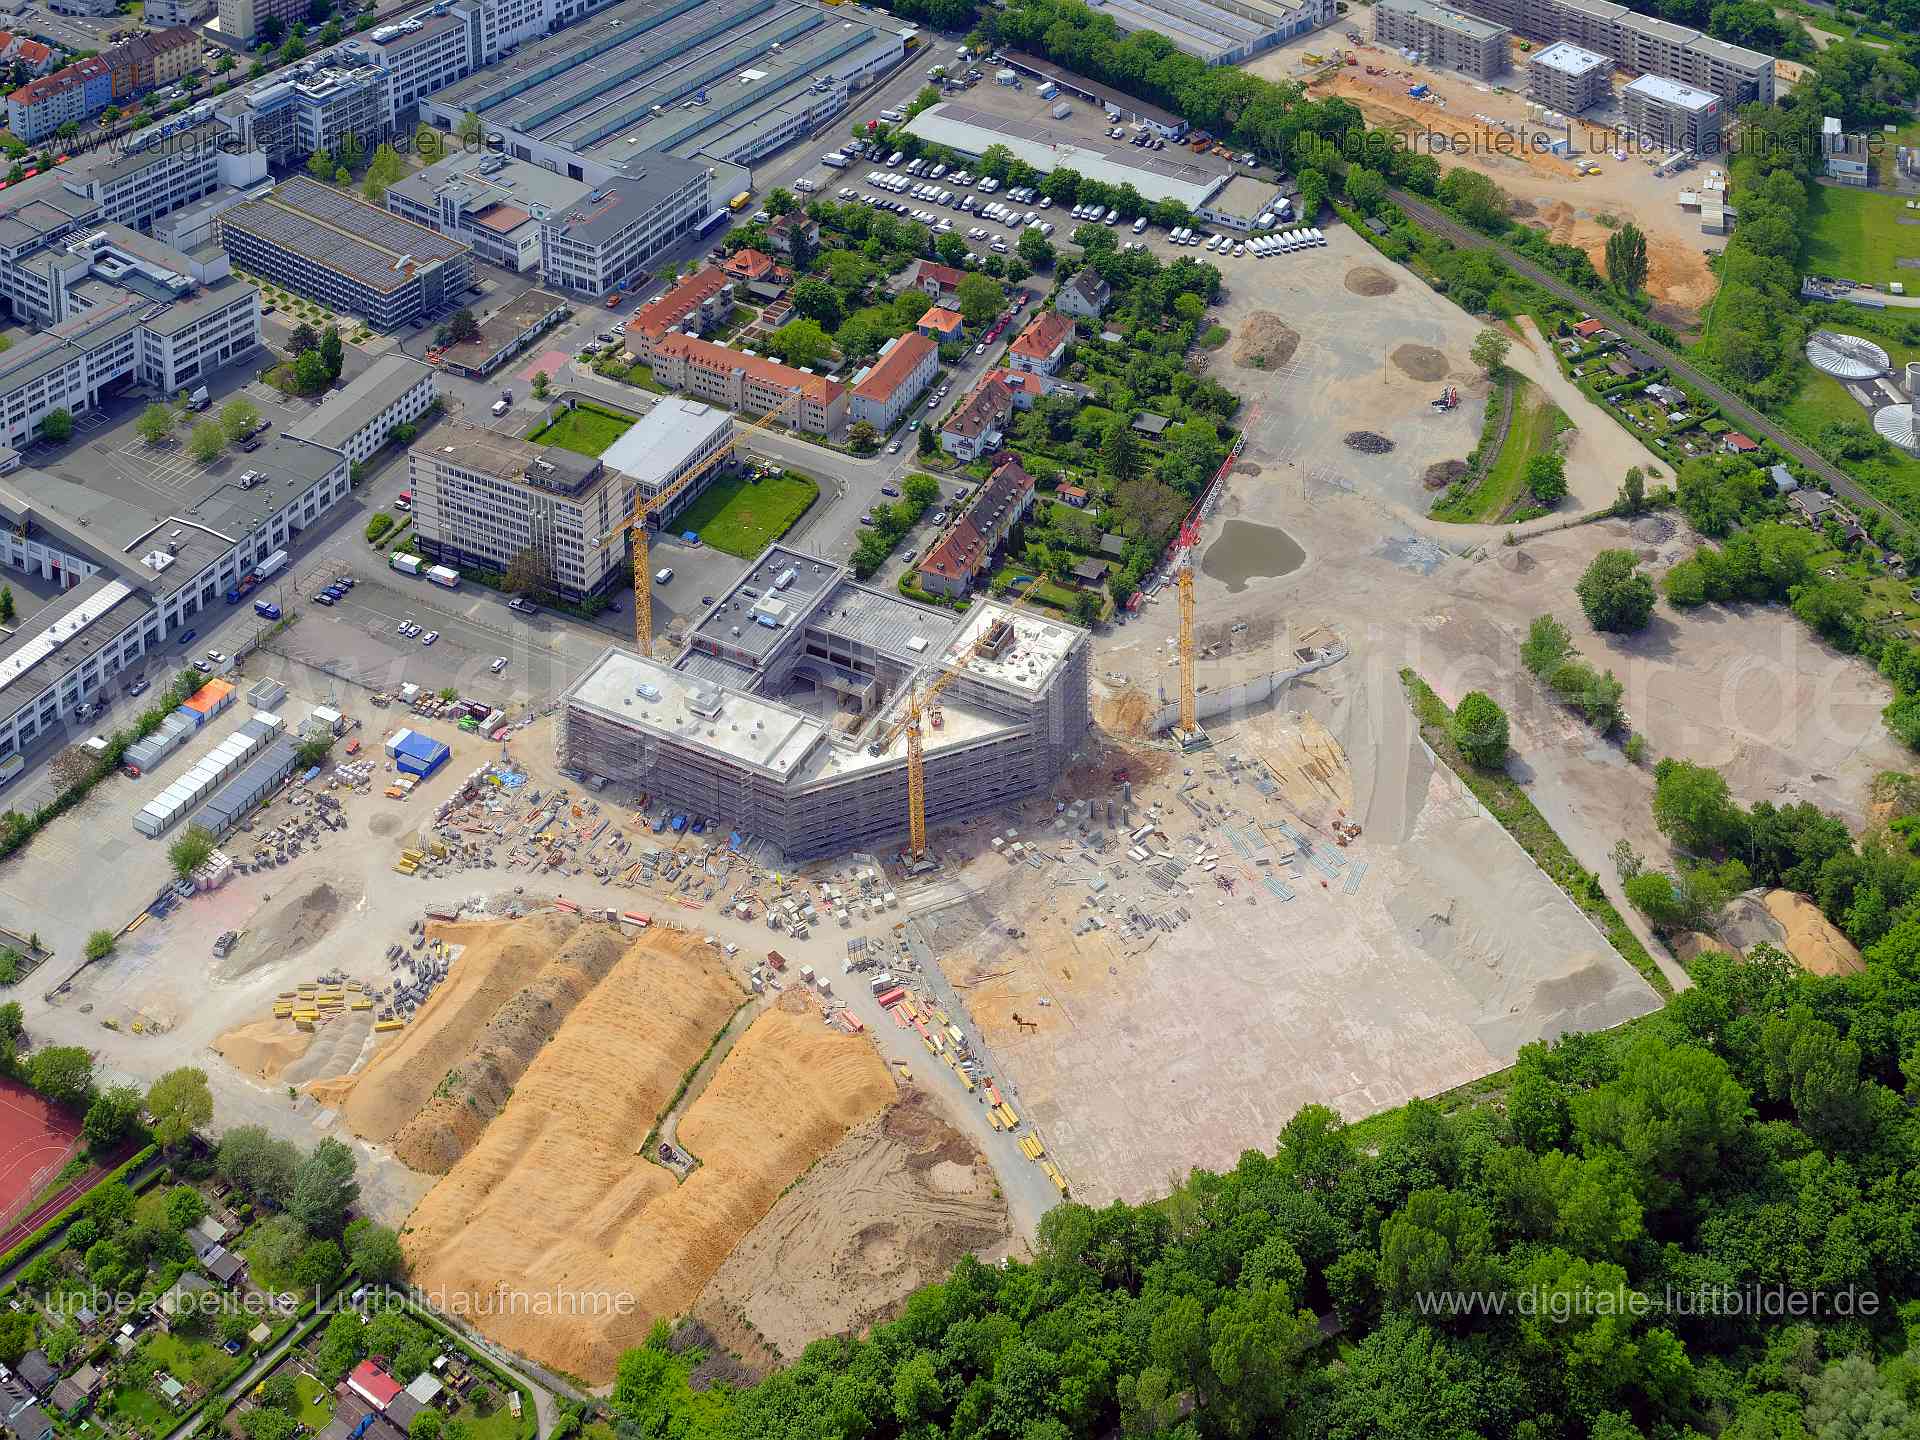 Luftbild - Auf AEG, Ort: Nürnberg, Tags: Auf AEG, Baustelle, Großbaustelle, Kran, Kräne, Gerüst, Gerüstbau, AEG Gelände, M...